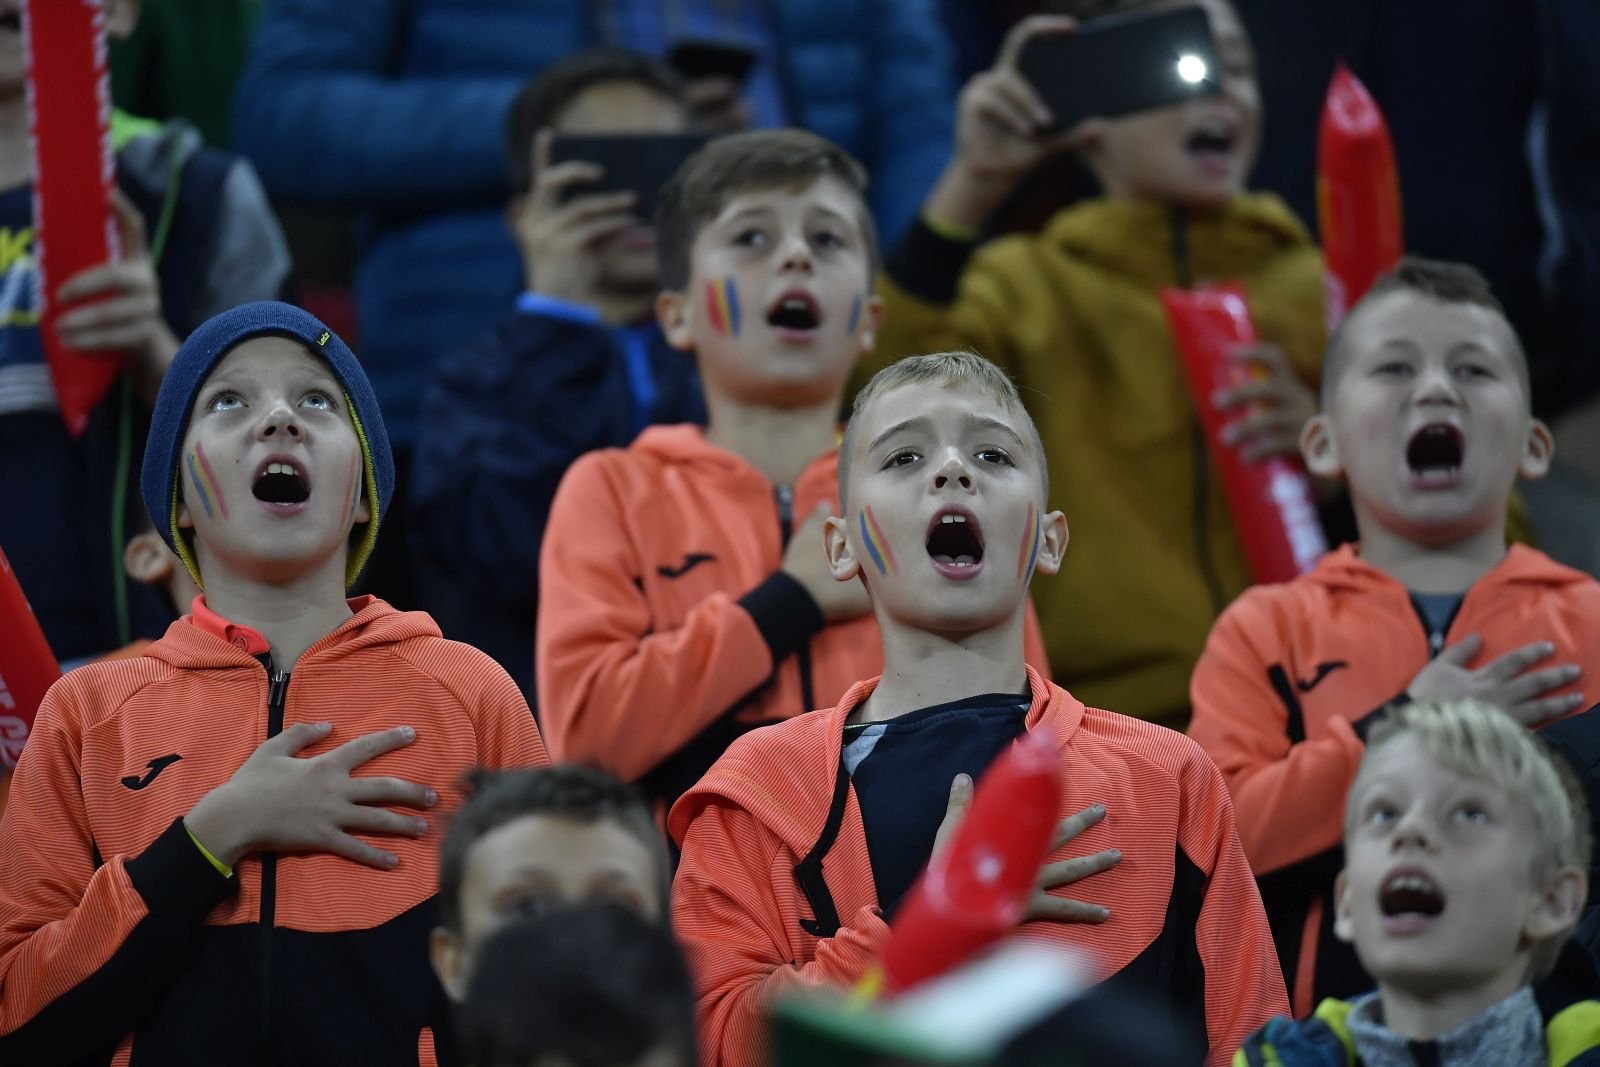  Am scăpat ieftin: Meciul cu Andorra nu va fi deschis publicului larg, dar copiii sub 14 ani vor avea acces gratuit